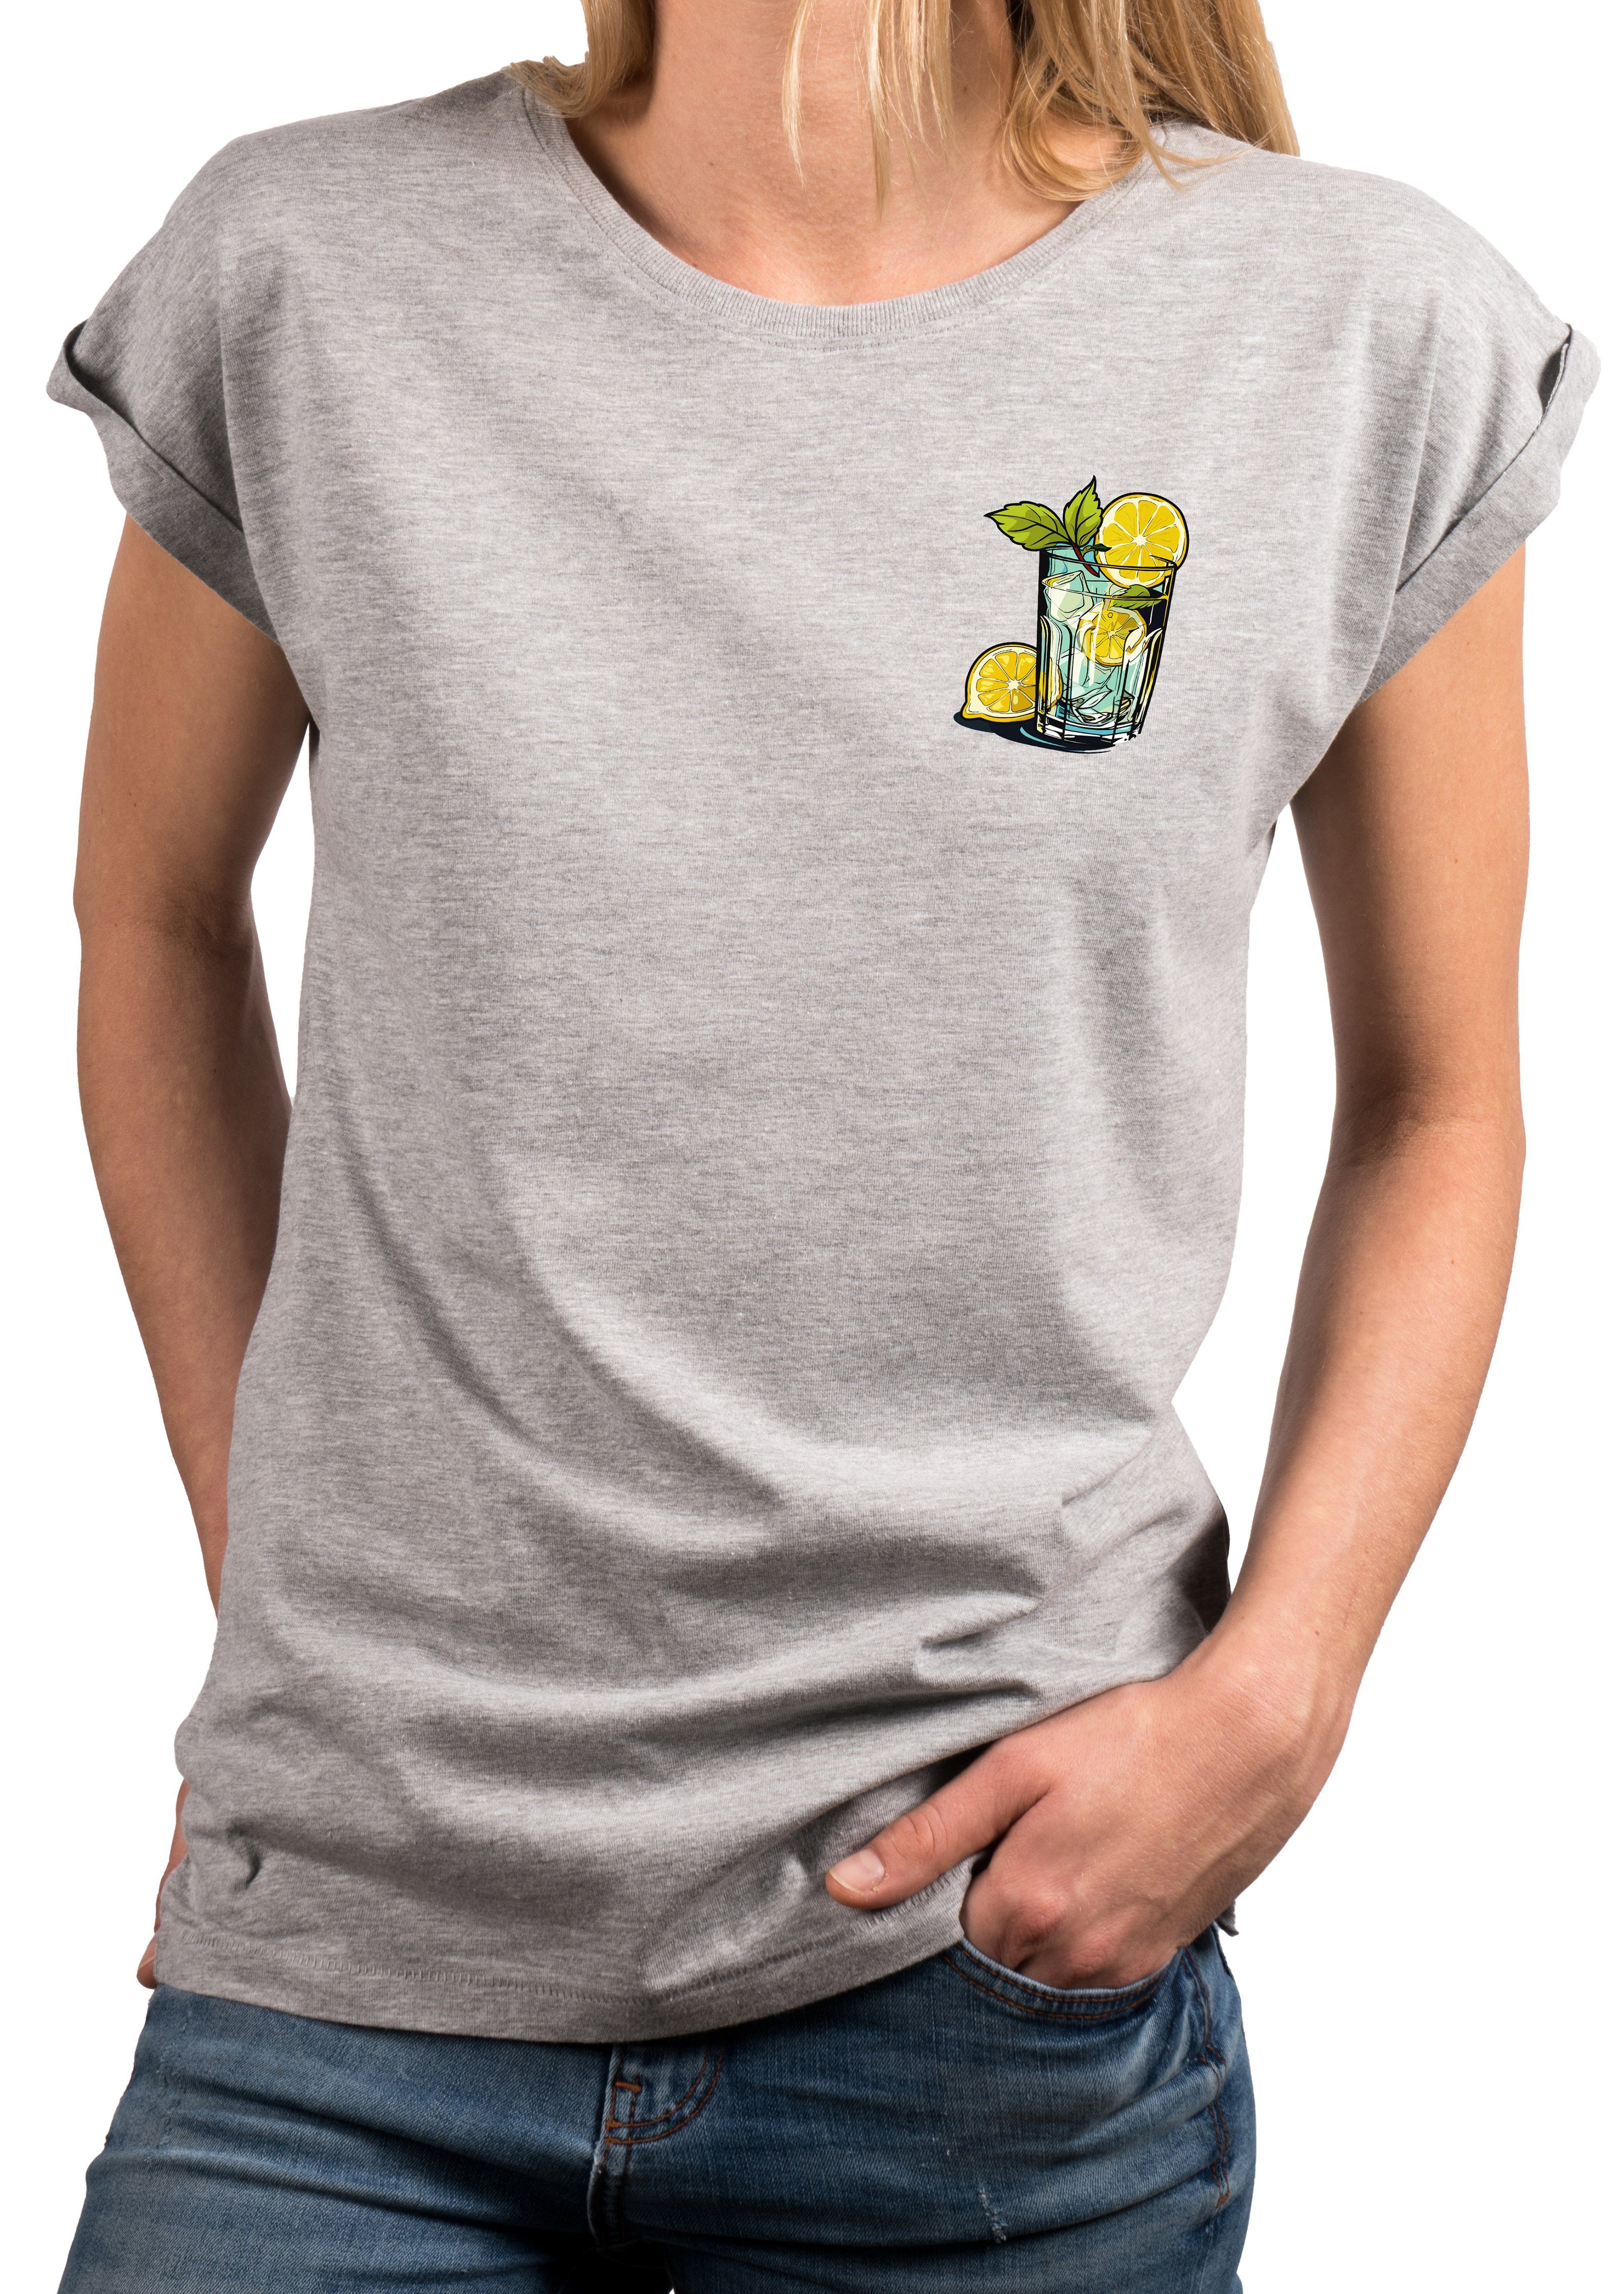 MAKAYA Print-Shirt Gin Tonic Gläser schöne modische Damen Tops Kurzarm Oberteile mit Druck, große Größen Hellgrau | T-Shirts